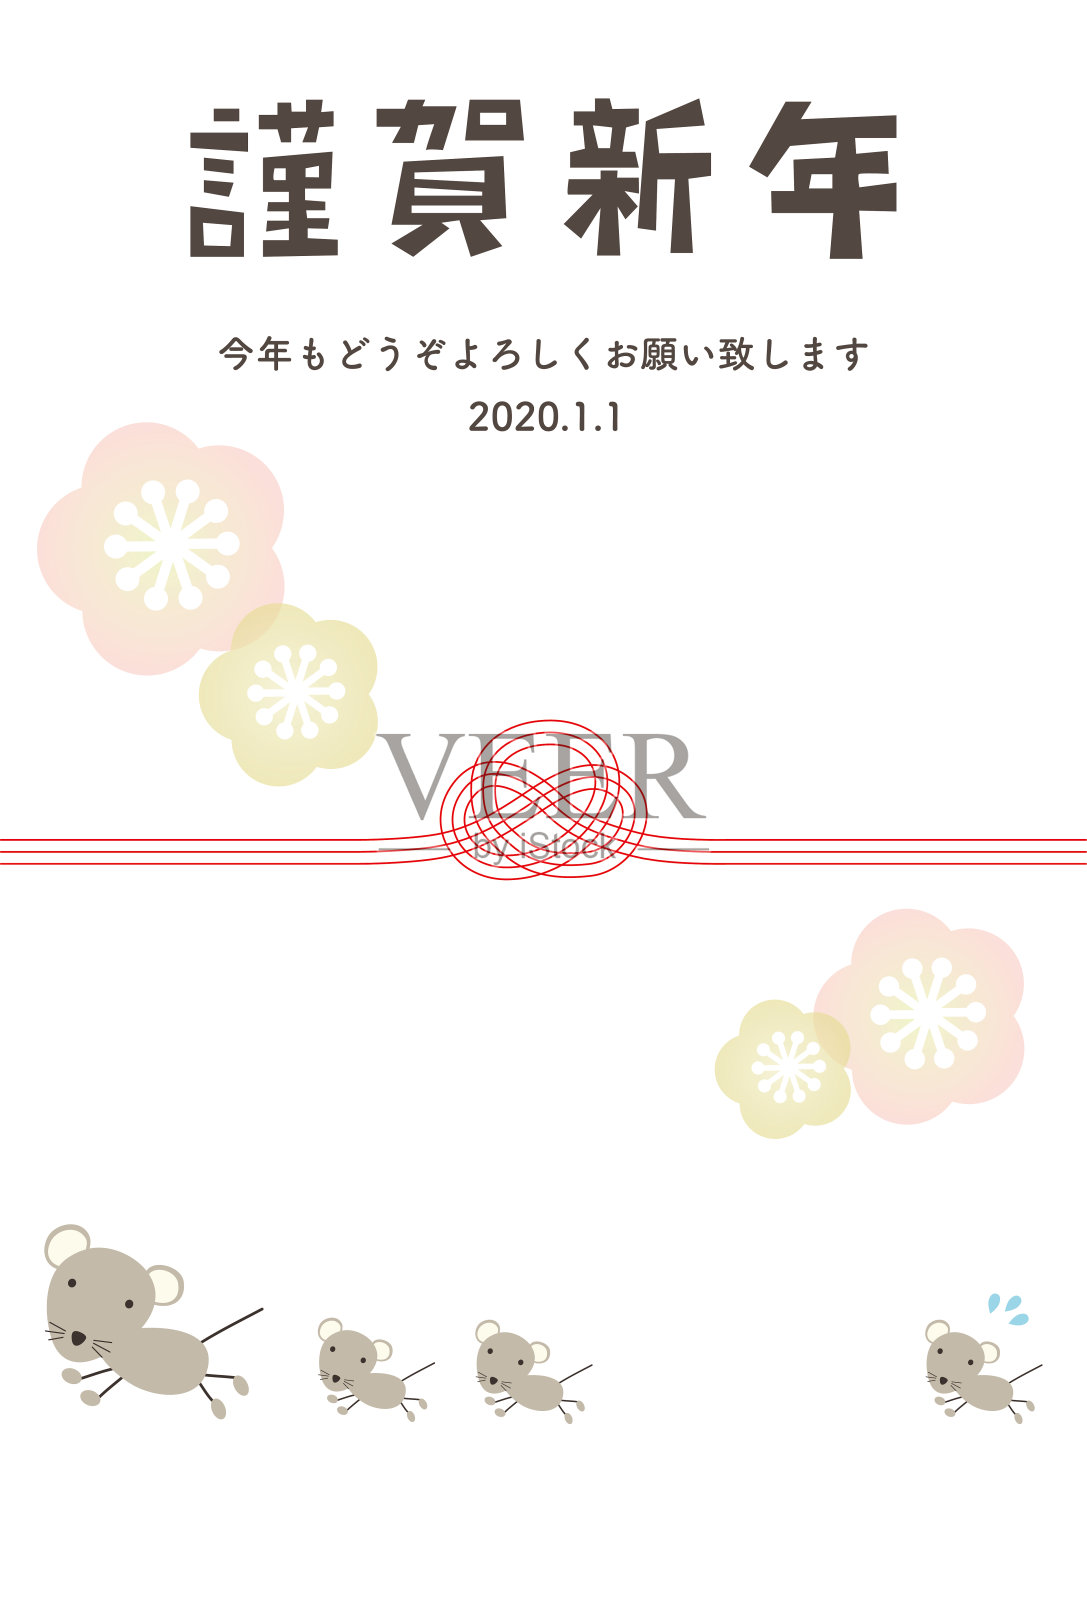 贺年卡插图的父母和孩子的跑步鼠和瑞彦。日本汉字是“新年快乐”。插画图片素材